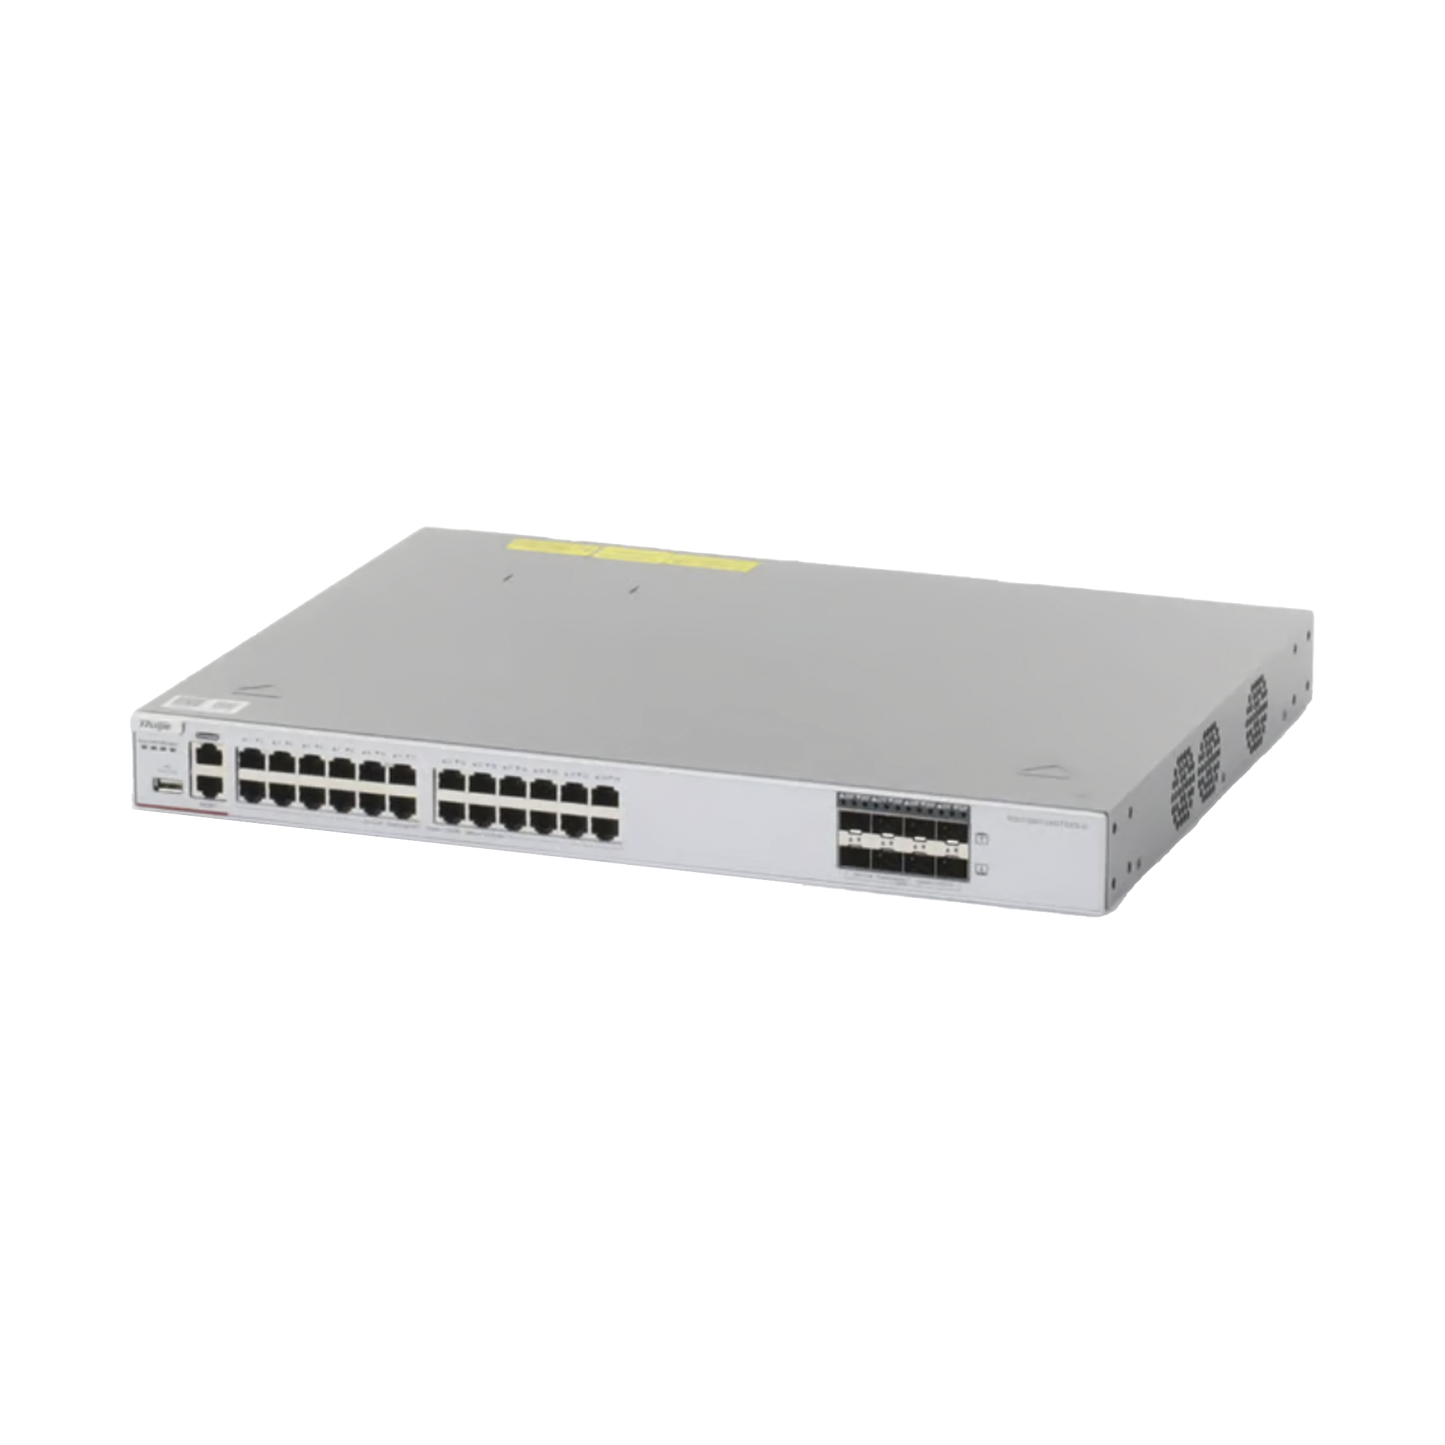 Switch Core Administrable Capa 3 con 24 puertos Gigabit + 8 SFP+ para fibra 10Gb, gestiÃ³n gratuita desde la nube.